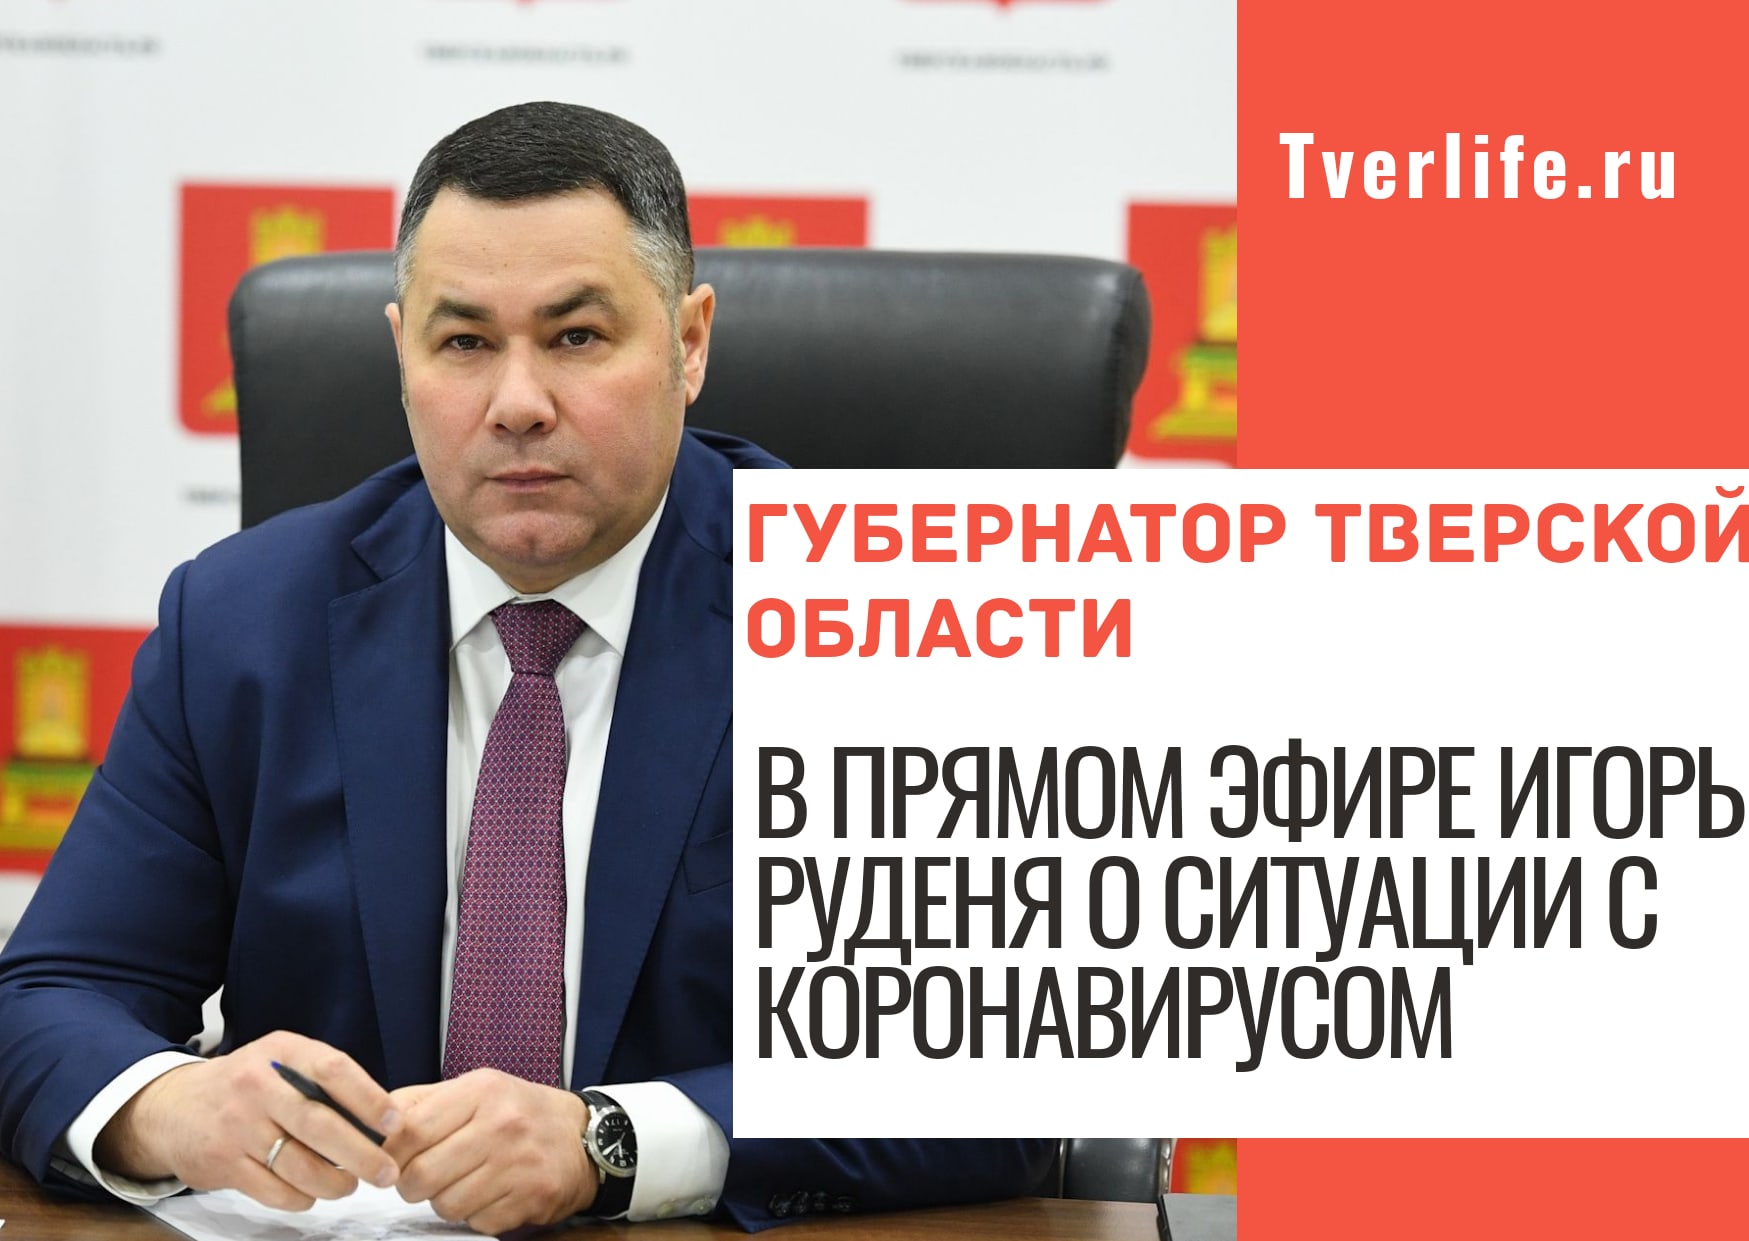 Стартовал прямой эфир с губернатором Тверской области по теме коронавируса